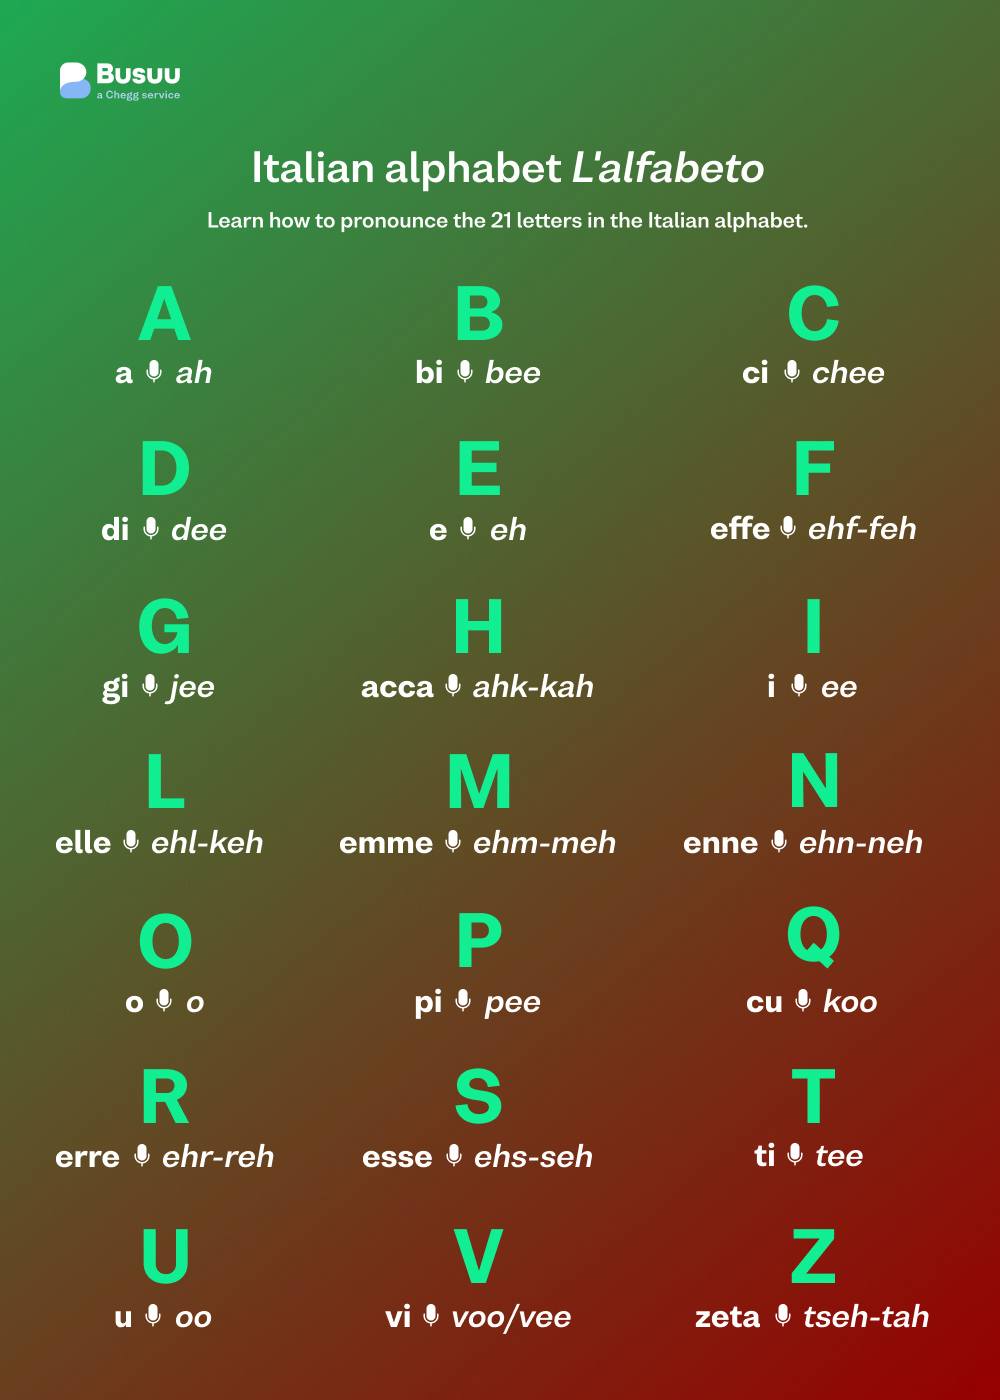 Italian alphabet infographic, courtesy of Busuu, award-winning language learning app